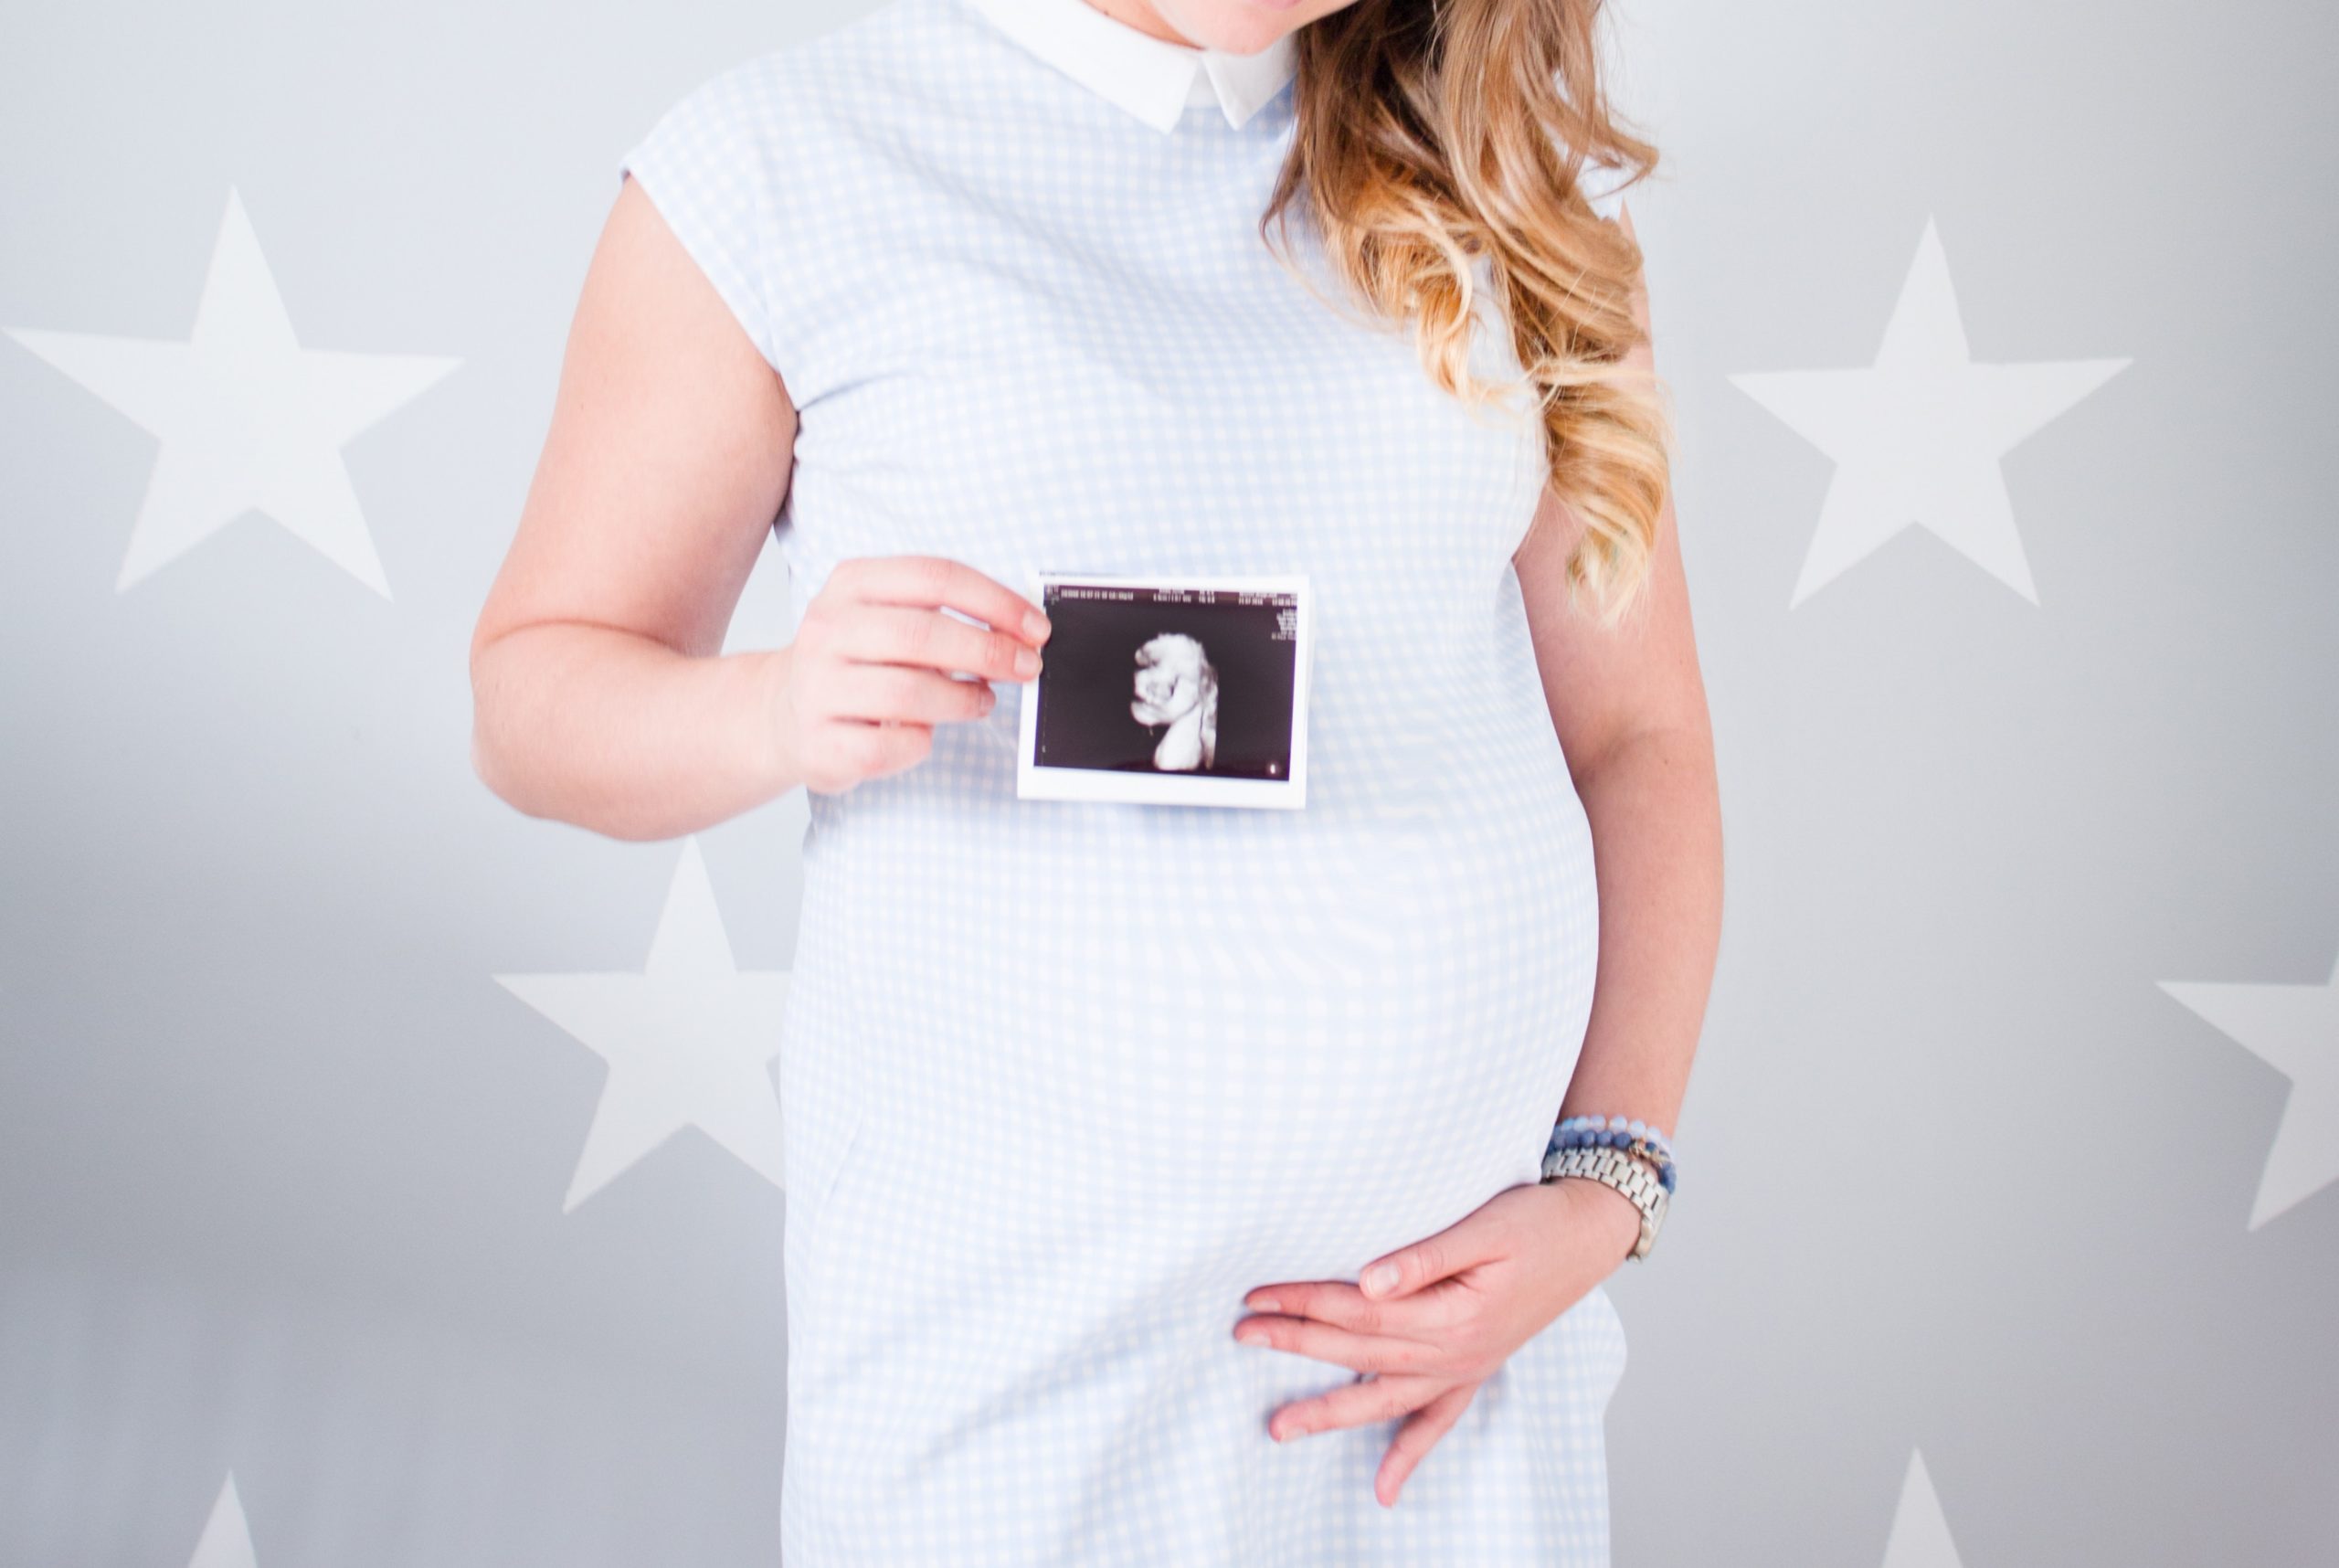 Pulsenmore desarrolló un sistema que permite ver el estado del bebé en el útero de con el celular. Foto: Dominika Roseclay/Pexels.